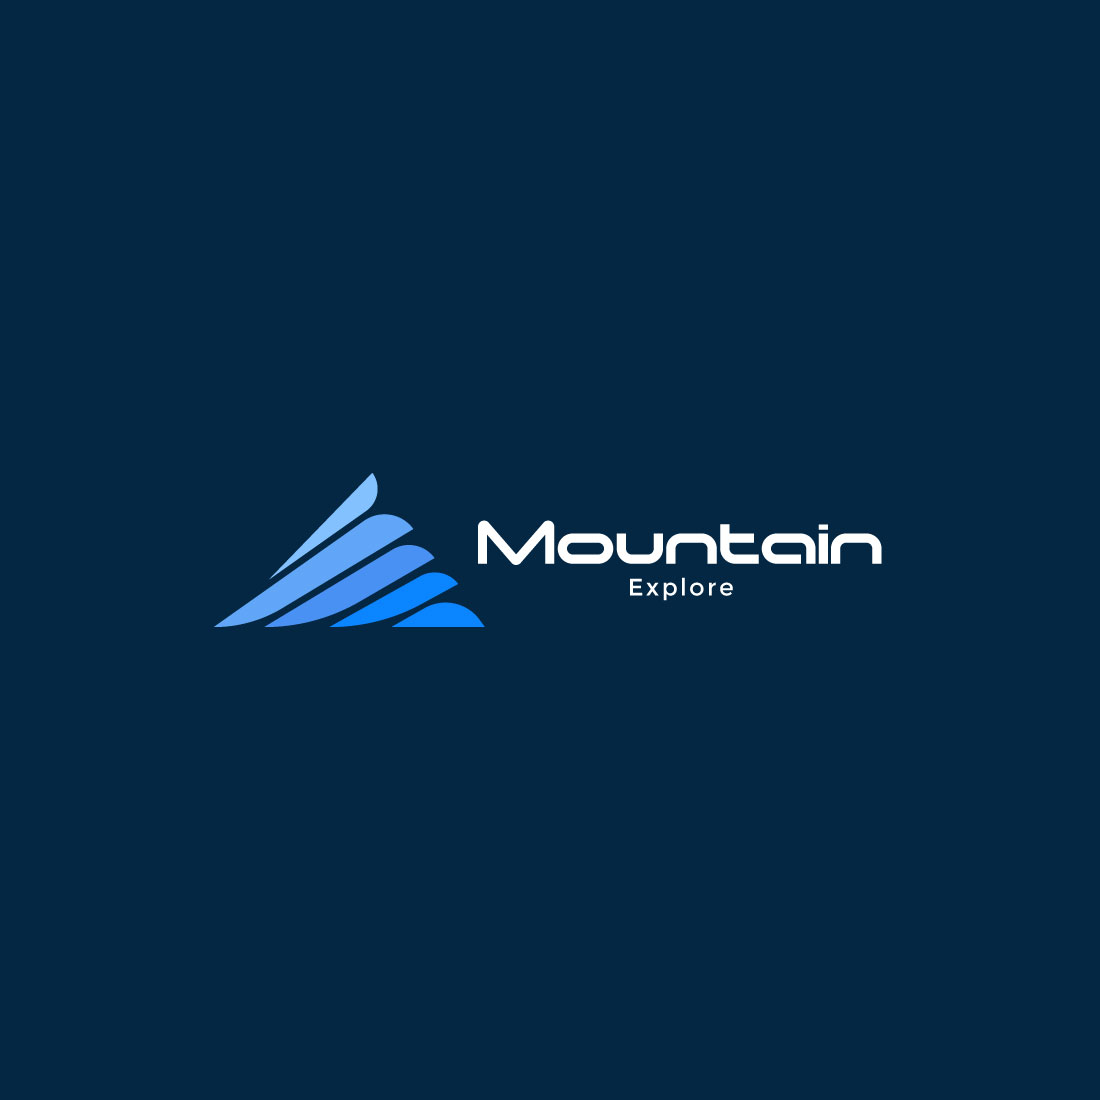 Mountain logo design template preview image.